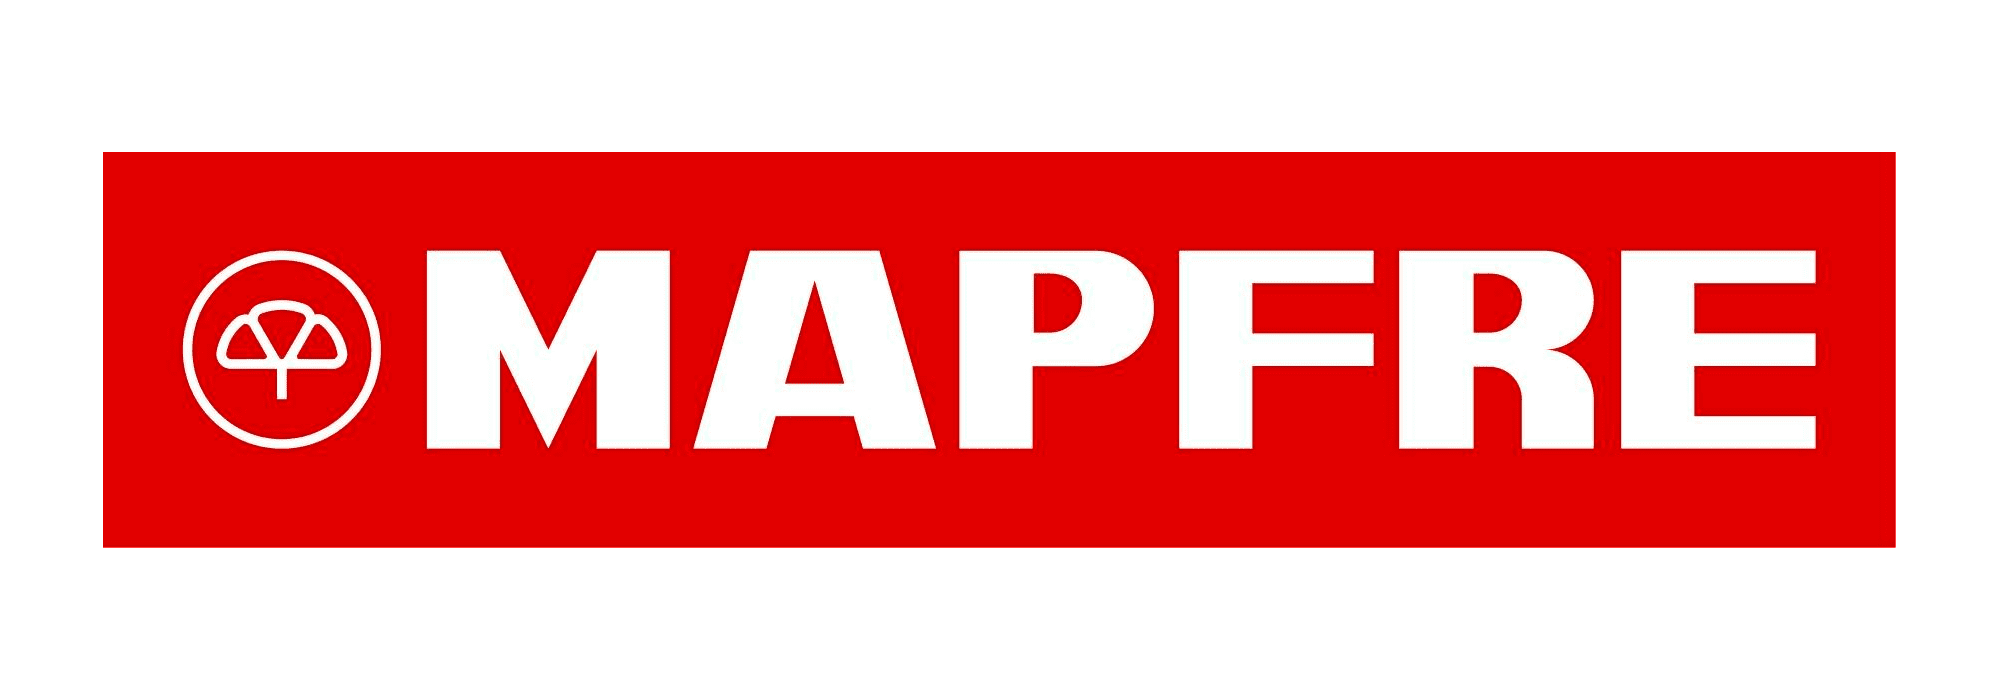 Mapfre-insurance-logo